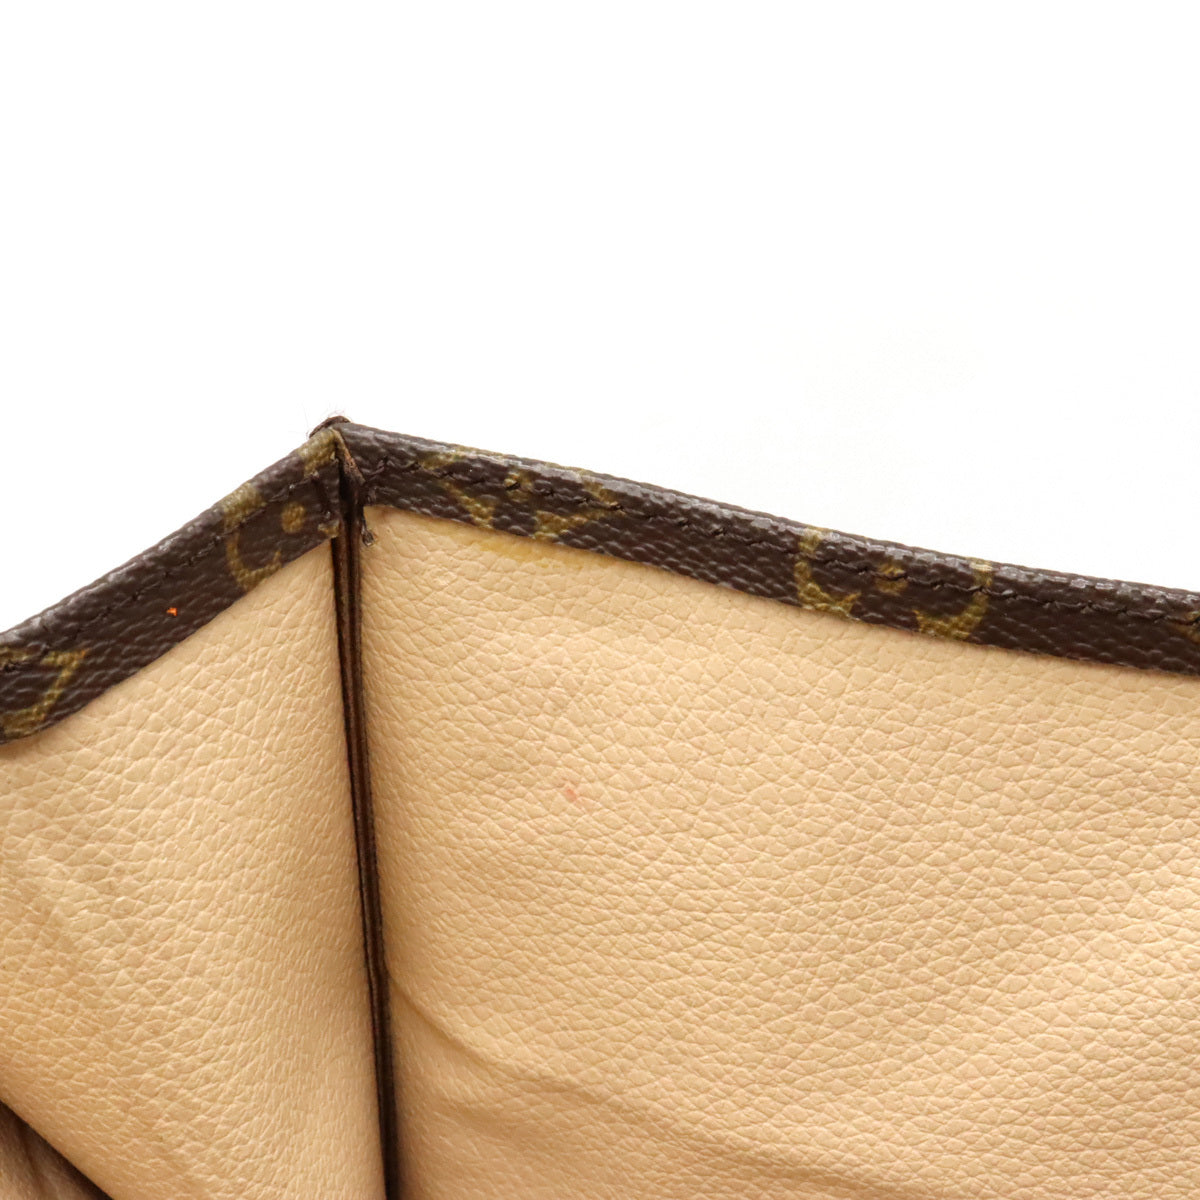 Louis Vuitton Authentic Vintage Iconic Sac Plat Tote Bag